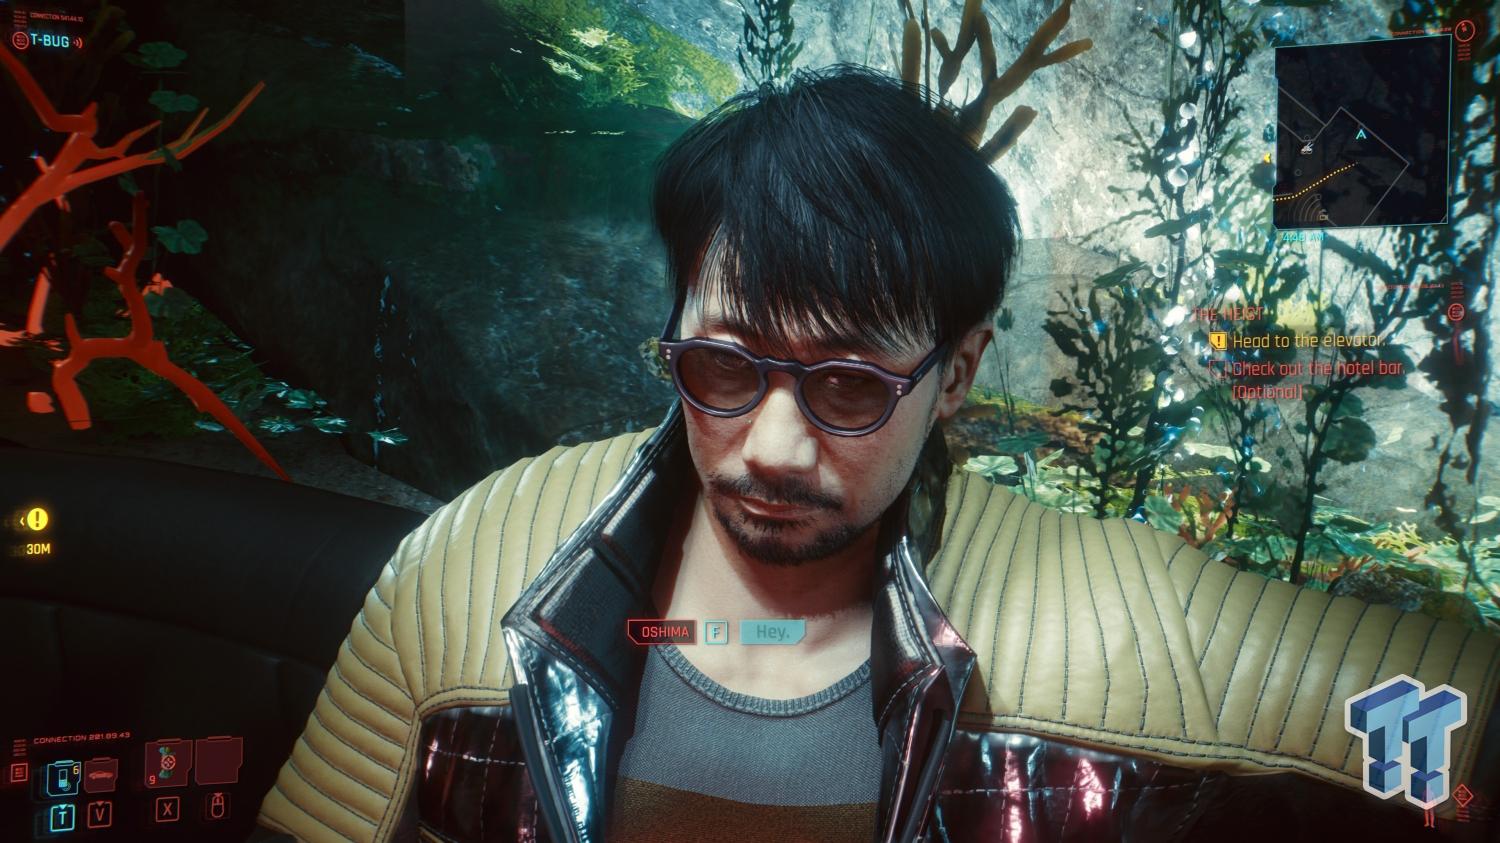 Hideo Kojima has a surprise cameo in 'Cyberpunk 2077